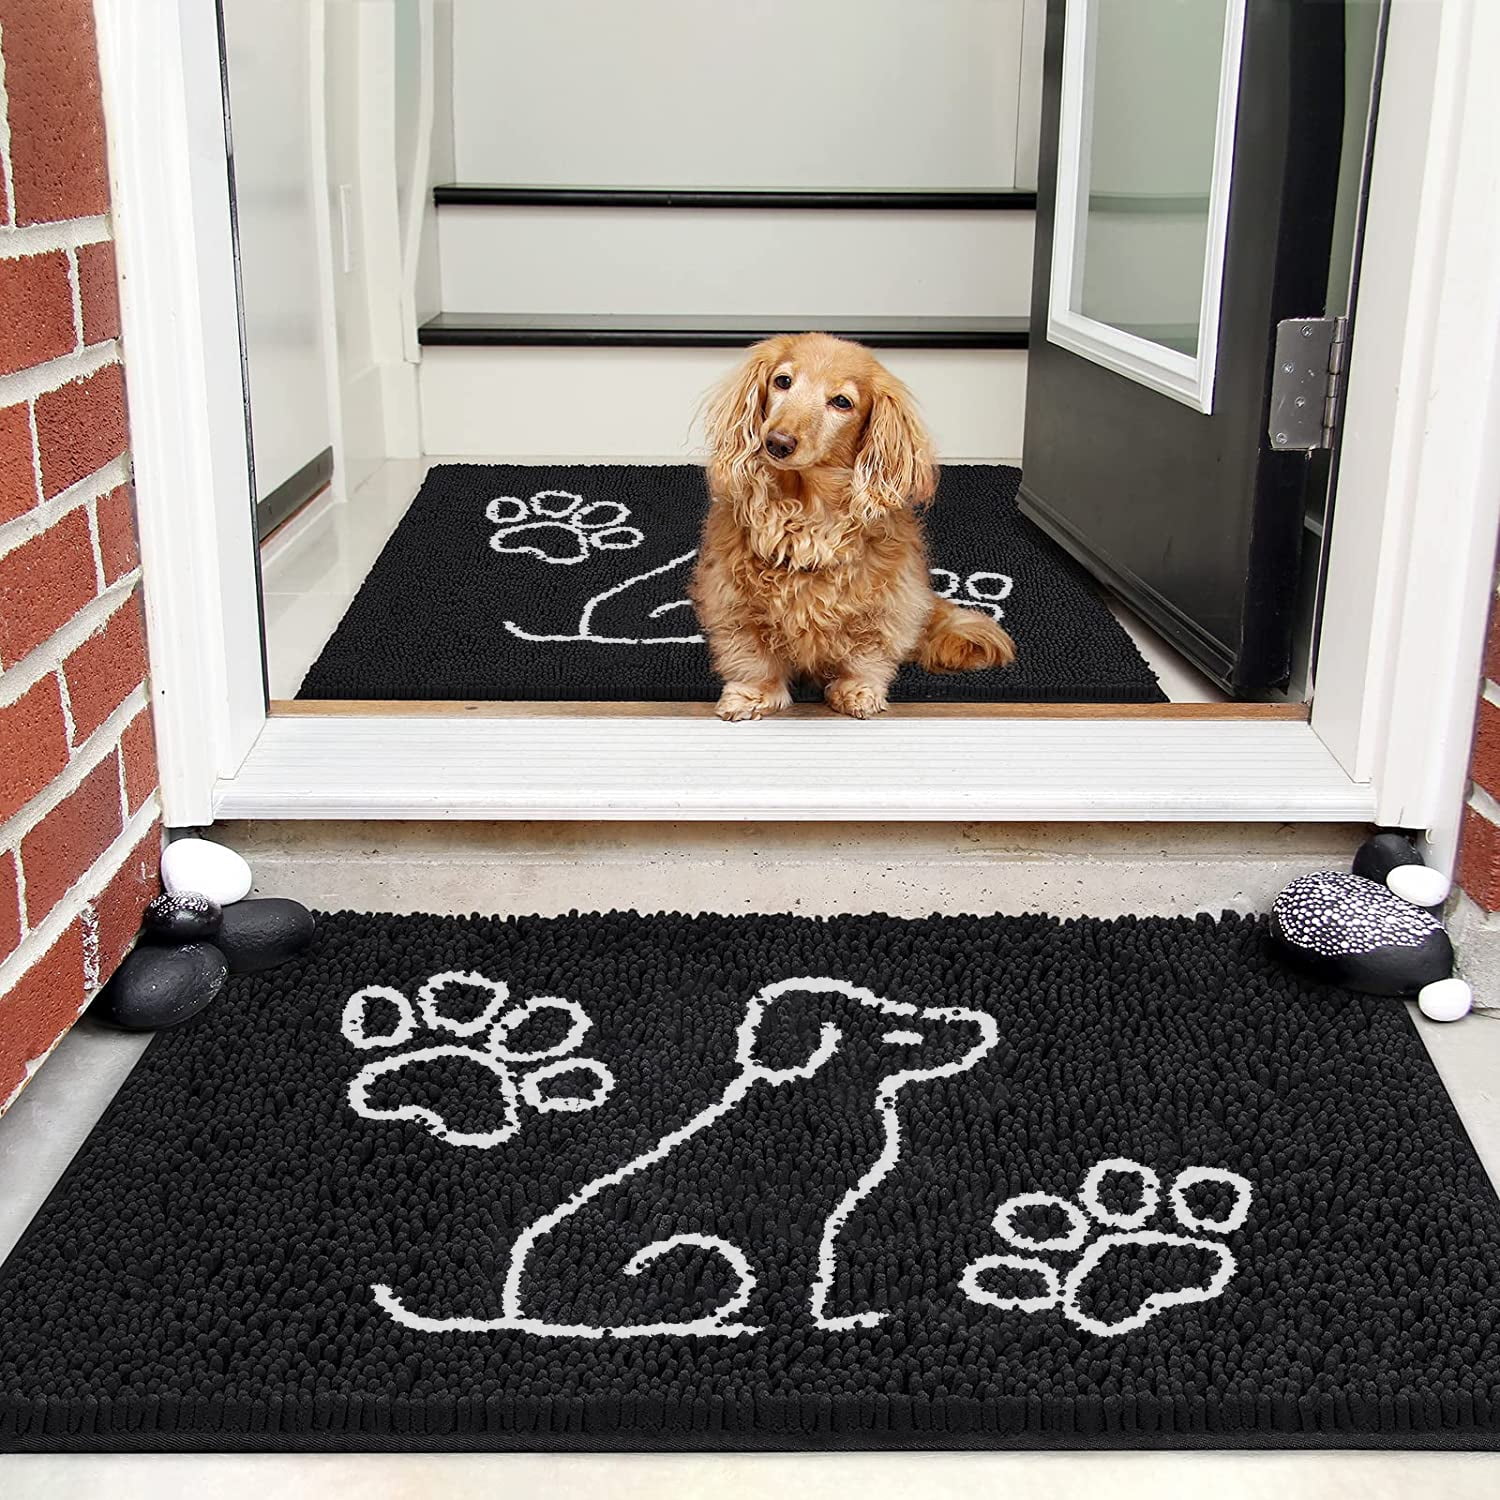 Softlife Chenille Dog Doormats Indoor Entrance,Pet Indoor Door Mats  Washable for Mud Entry Indoor Doormat With Dog Paws Prints,24x36,Gray